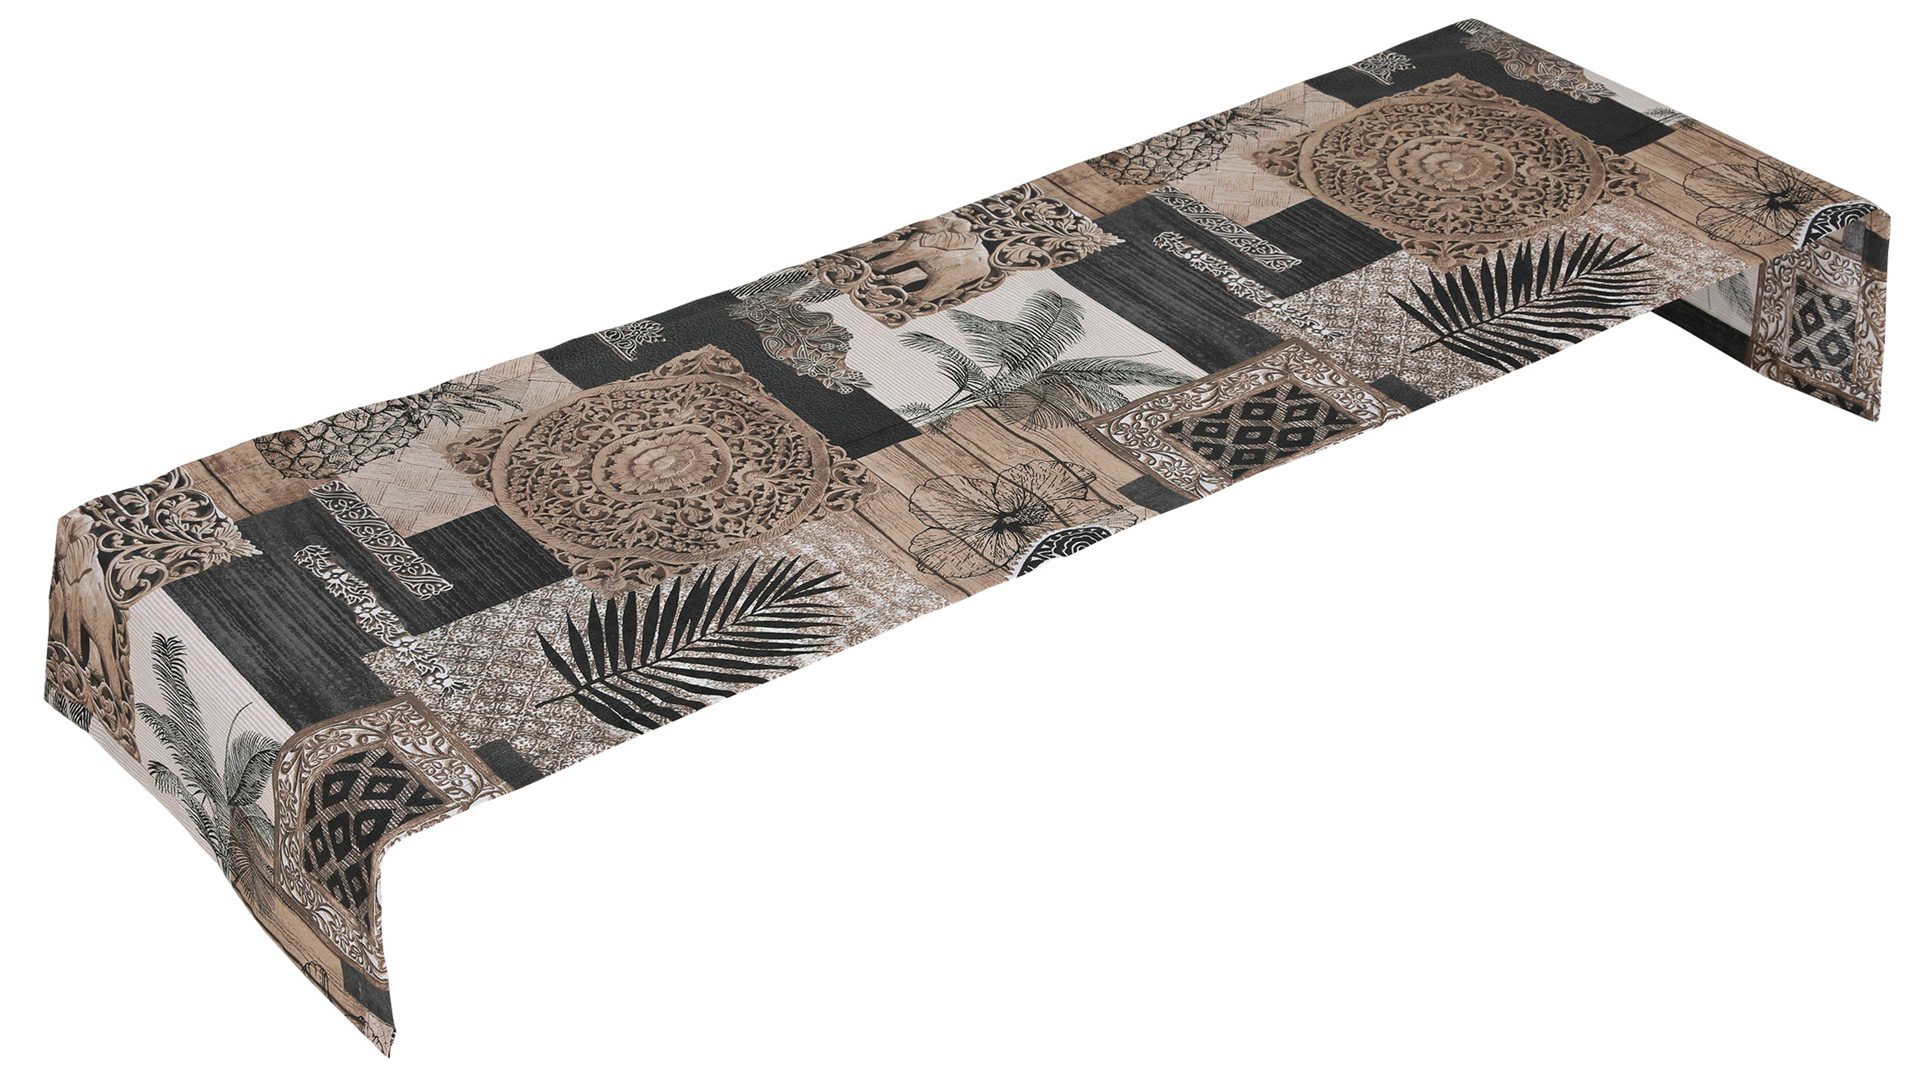 Tischläufer Go-de textil aus Stoff in Braun GO-DE TEXTIL Auflagen Serie 29 - Tischläufer Boho Style Motiv - ca. 140 x 40 cm